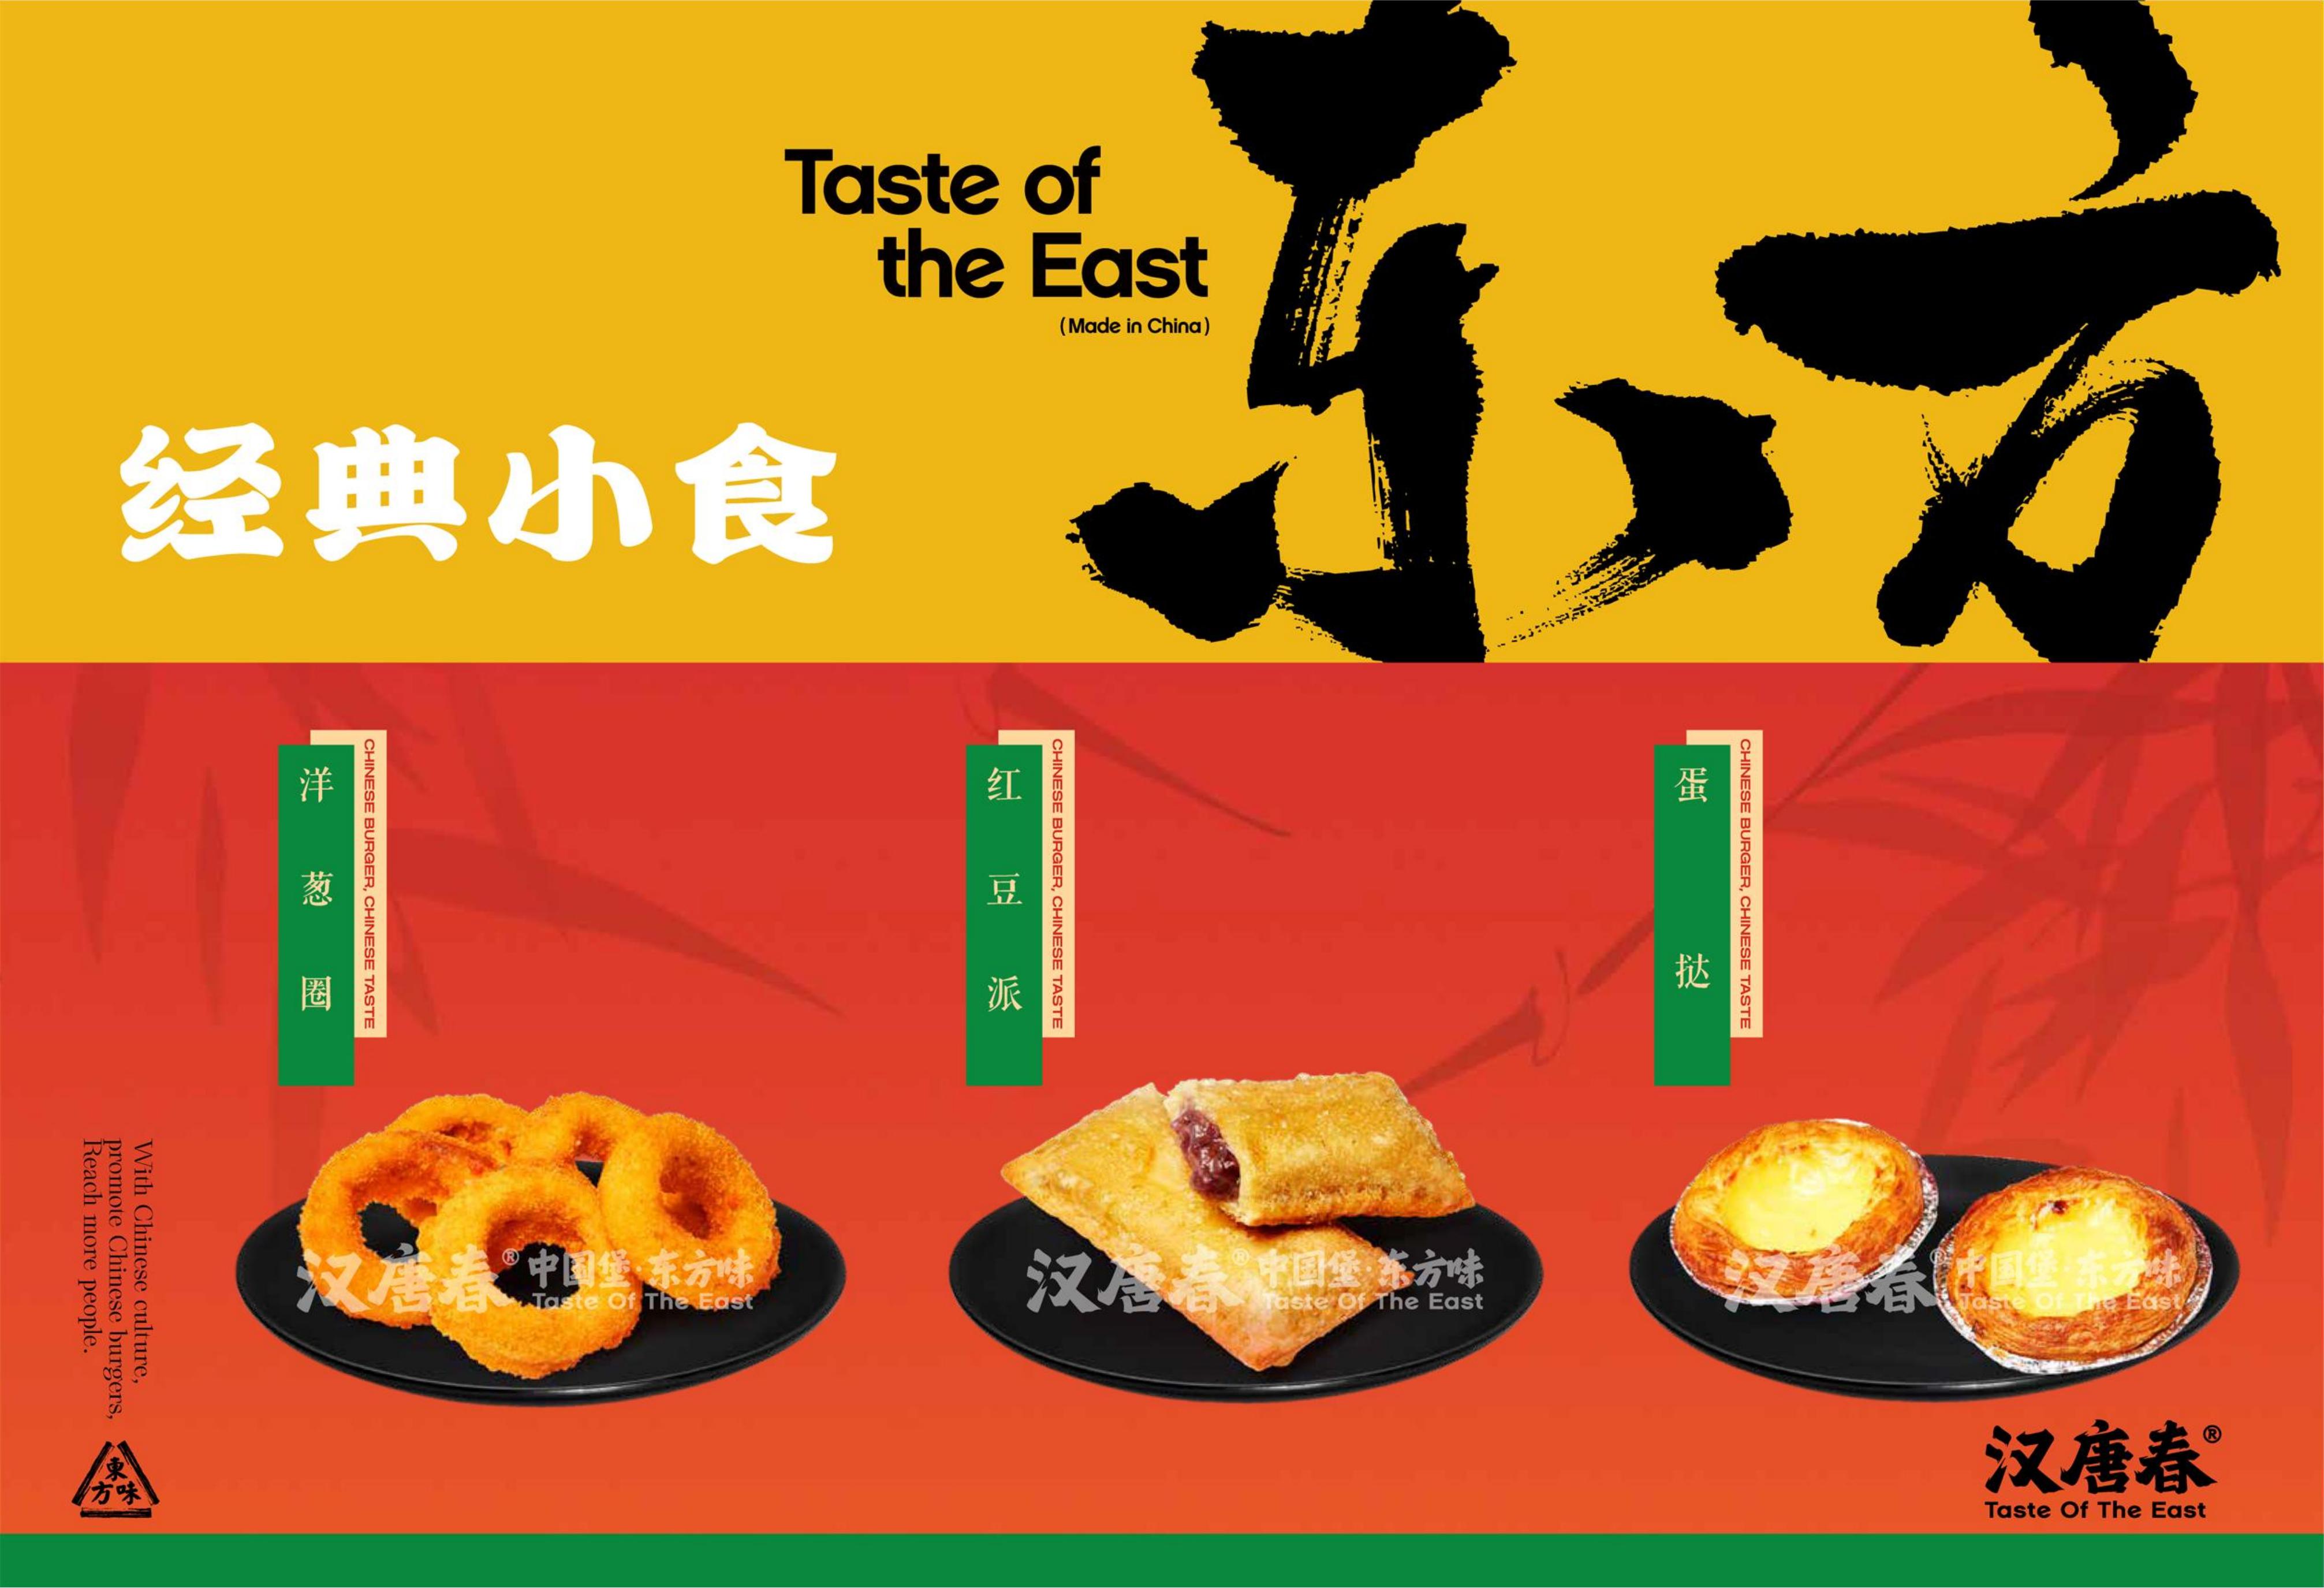 中国汉堡经典小食红豆派(图1)